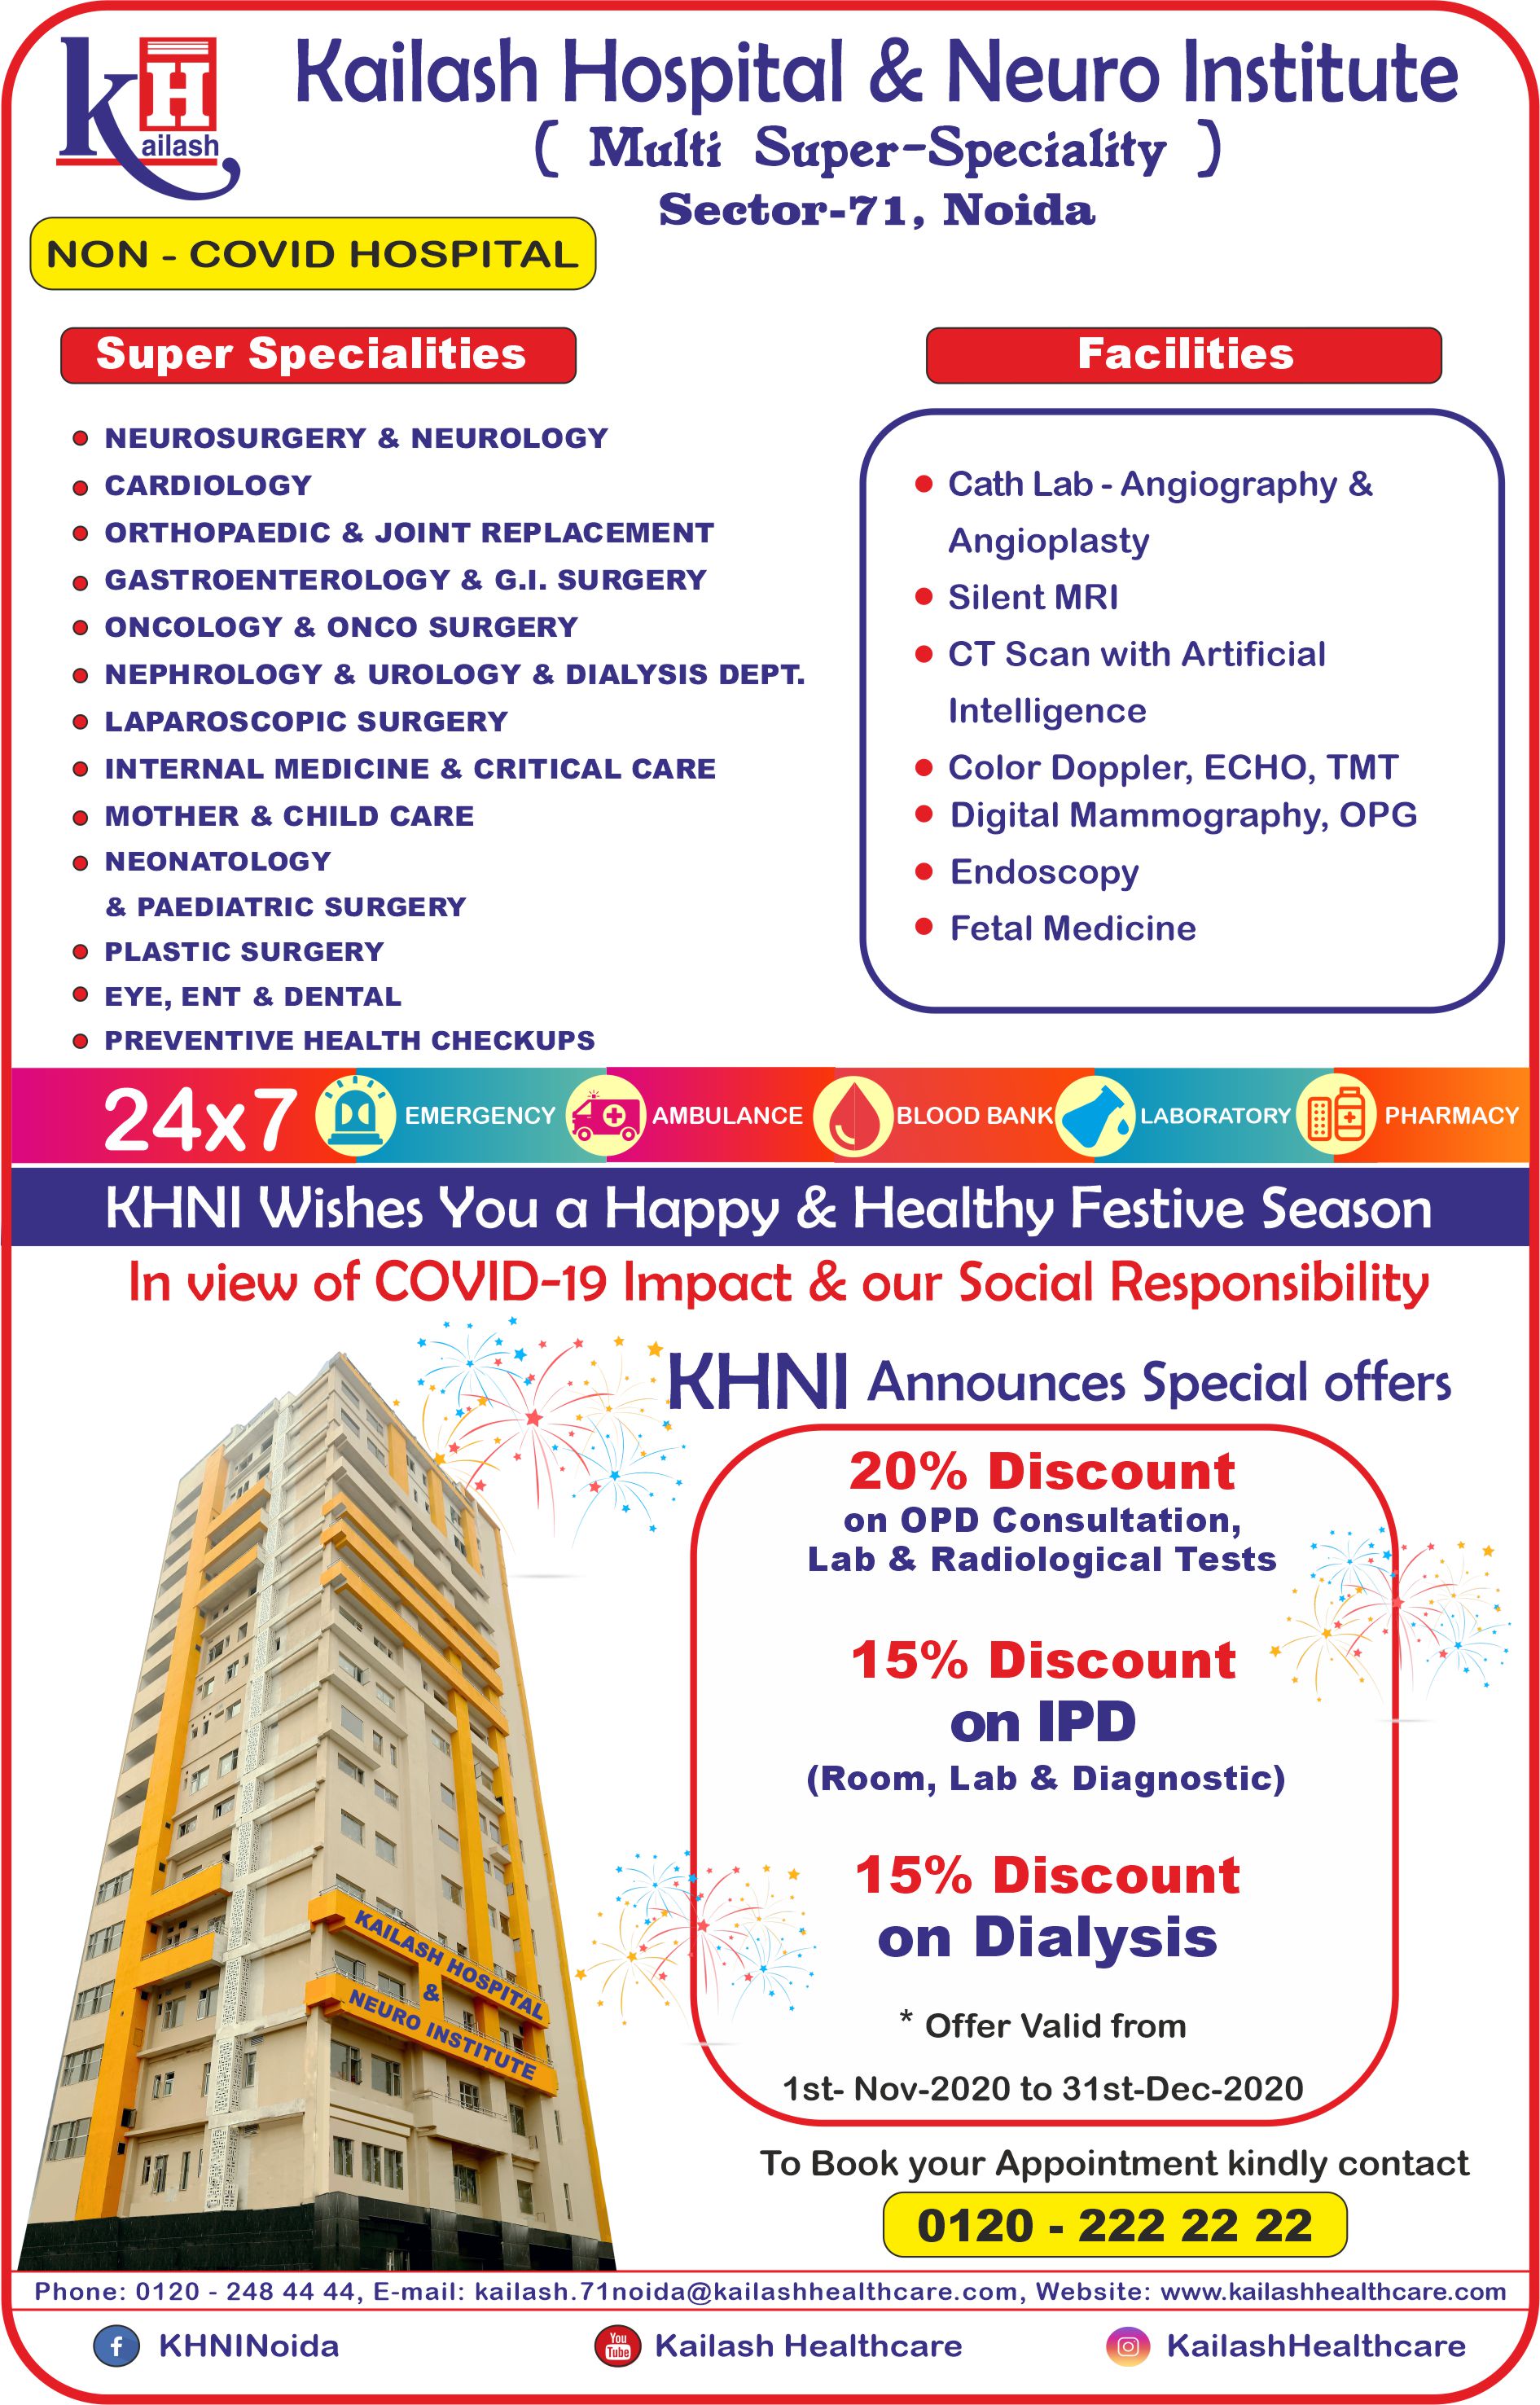 KHNI announces exclusive discounts on Consultations, Lab & Diagnostics to make your festive season happier & healthier.